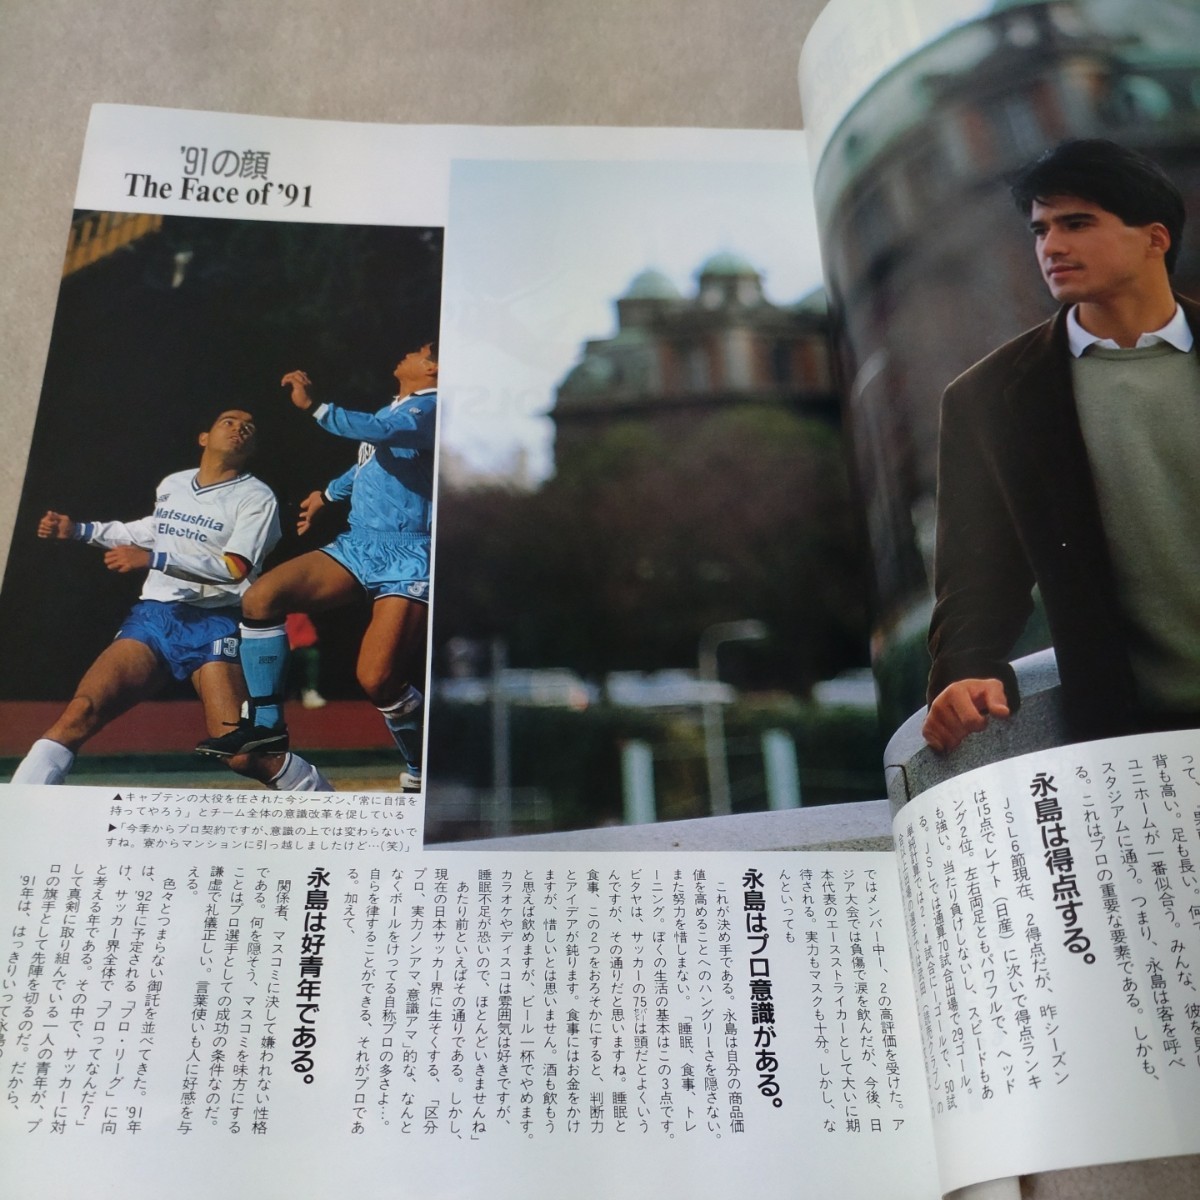  футбол журнал 1991 год 3 месяц 